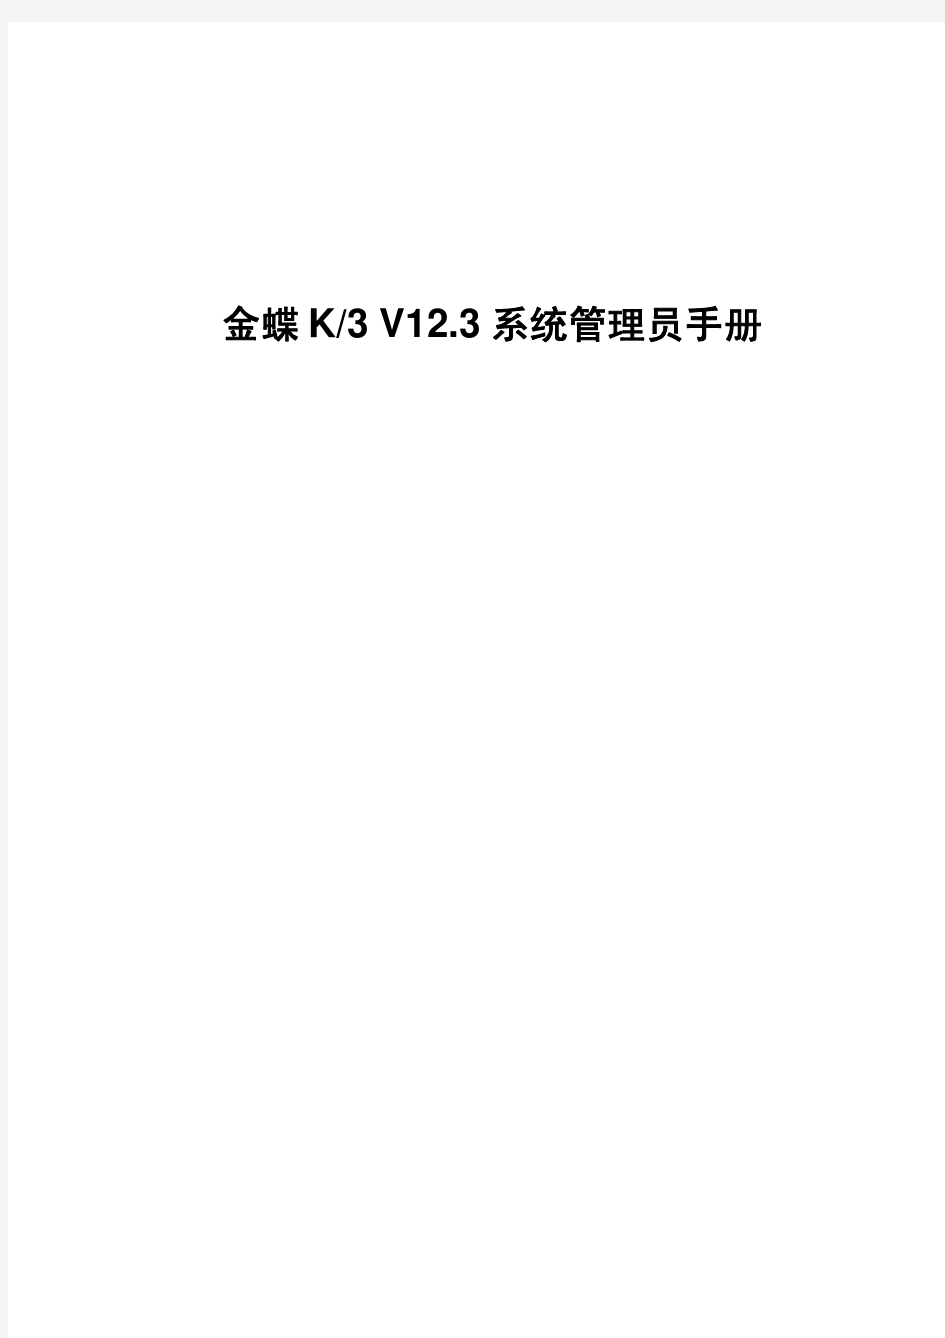 金蝶K3 V12.3 系统管理员手册用户手册